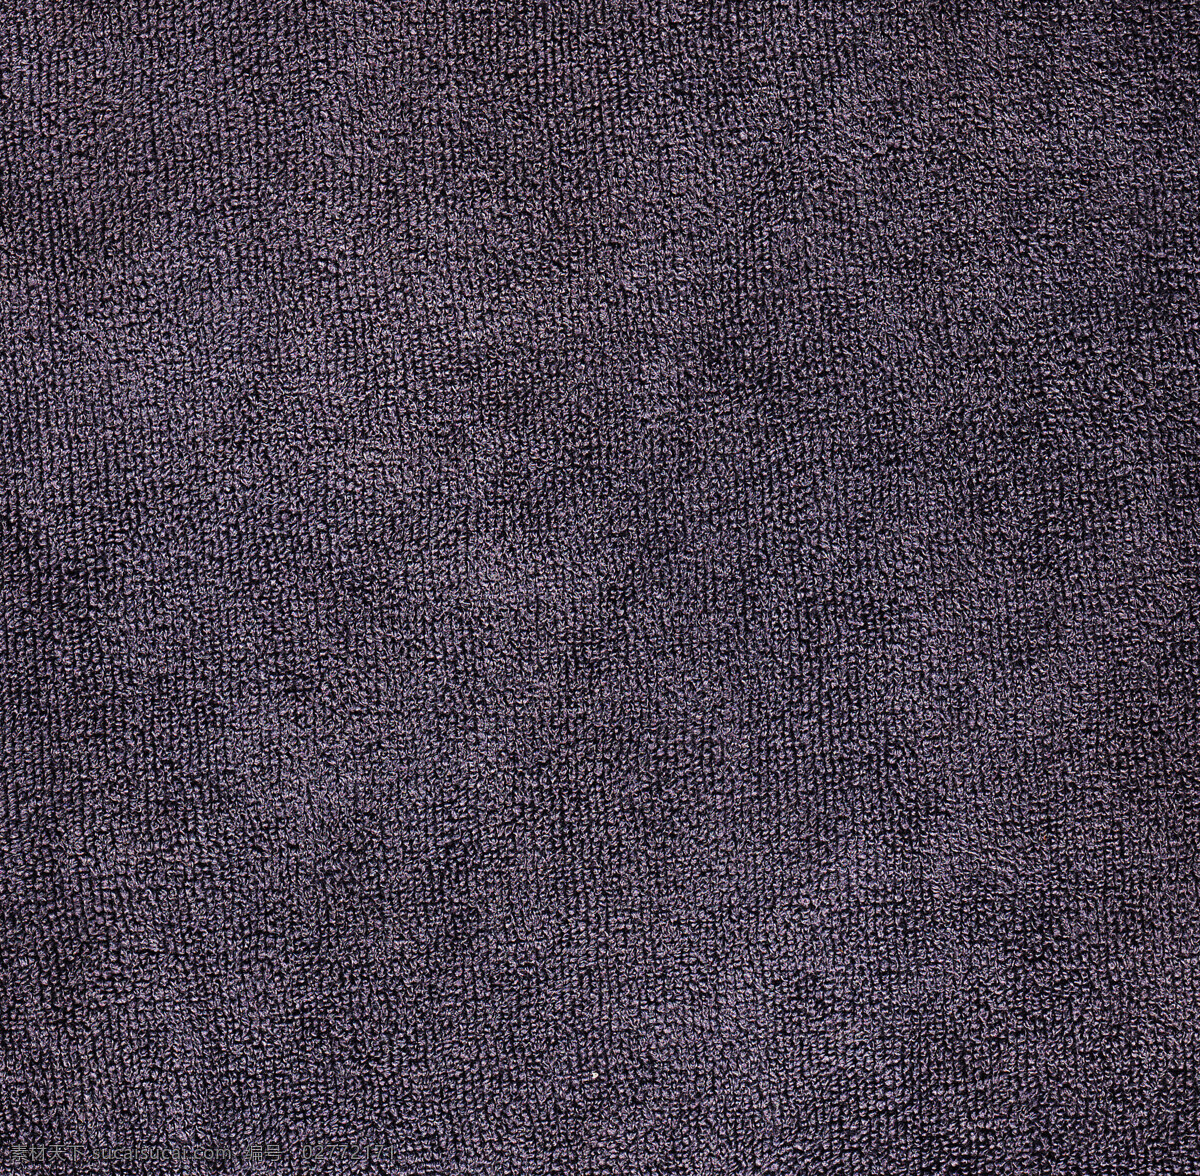 毛材质 毛巾材质 材质 绒 颗粒绒 颗粒绒材质 渲染材质 渲染素材 ps素材